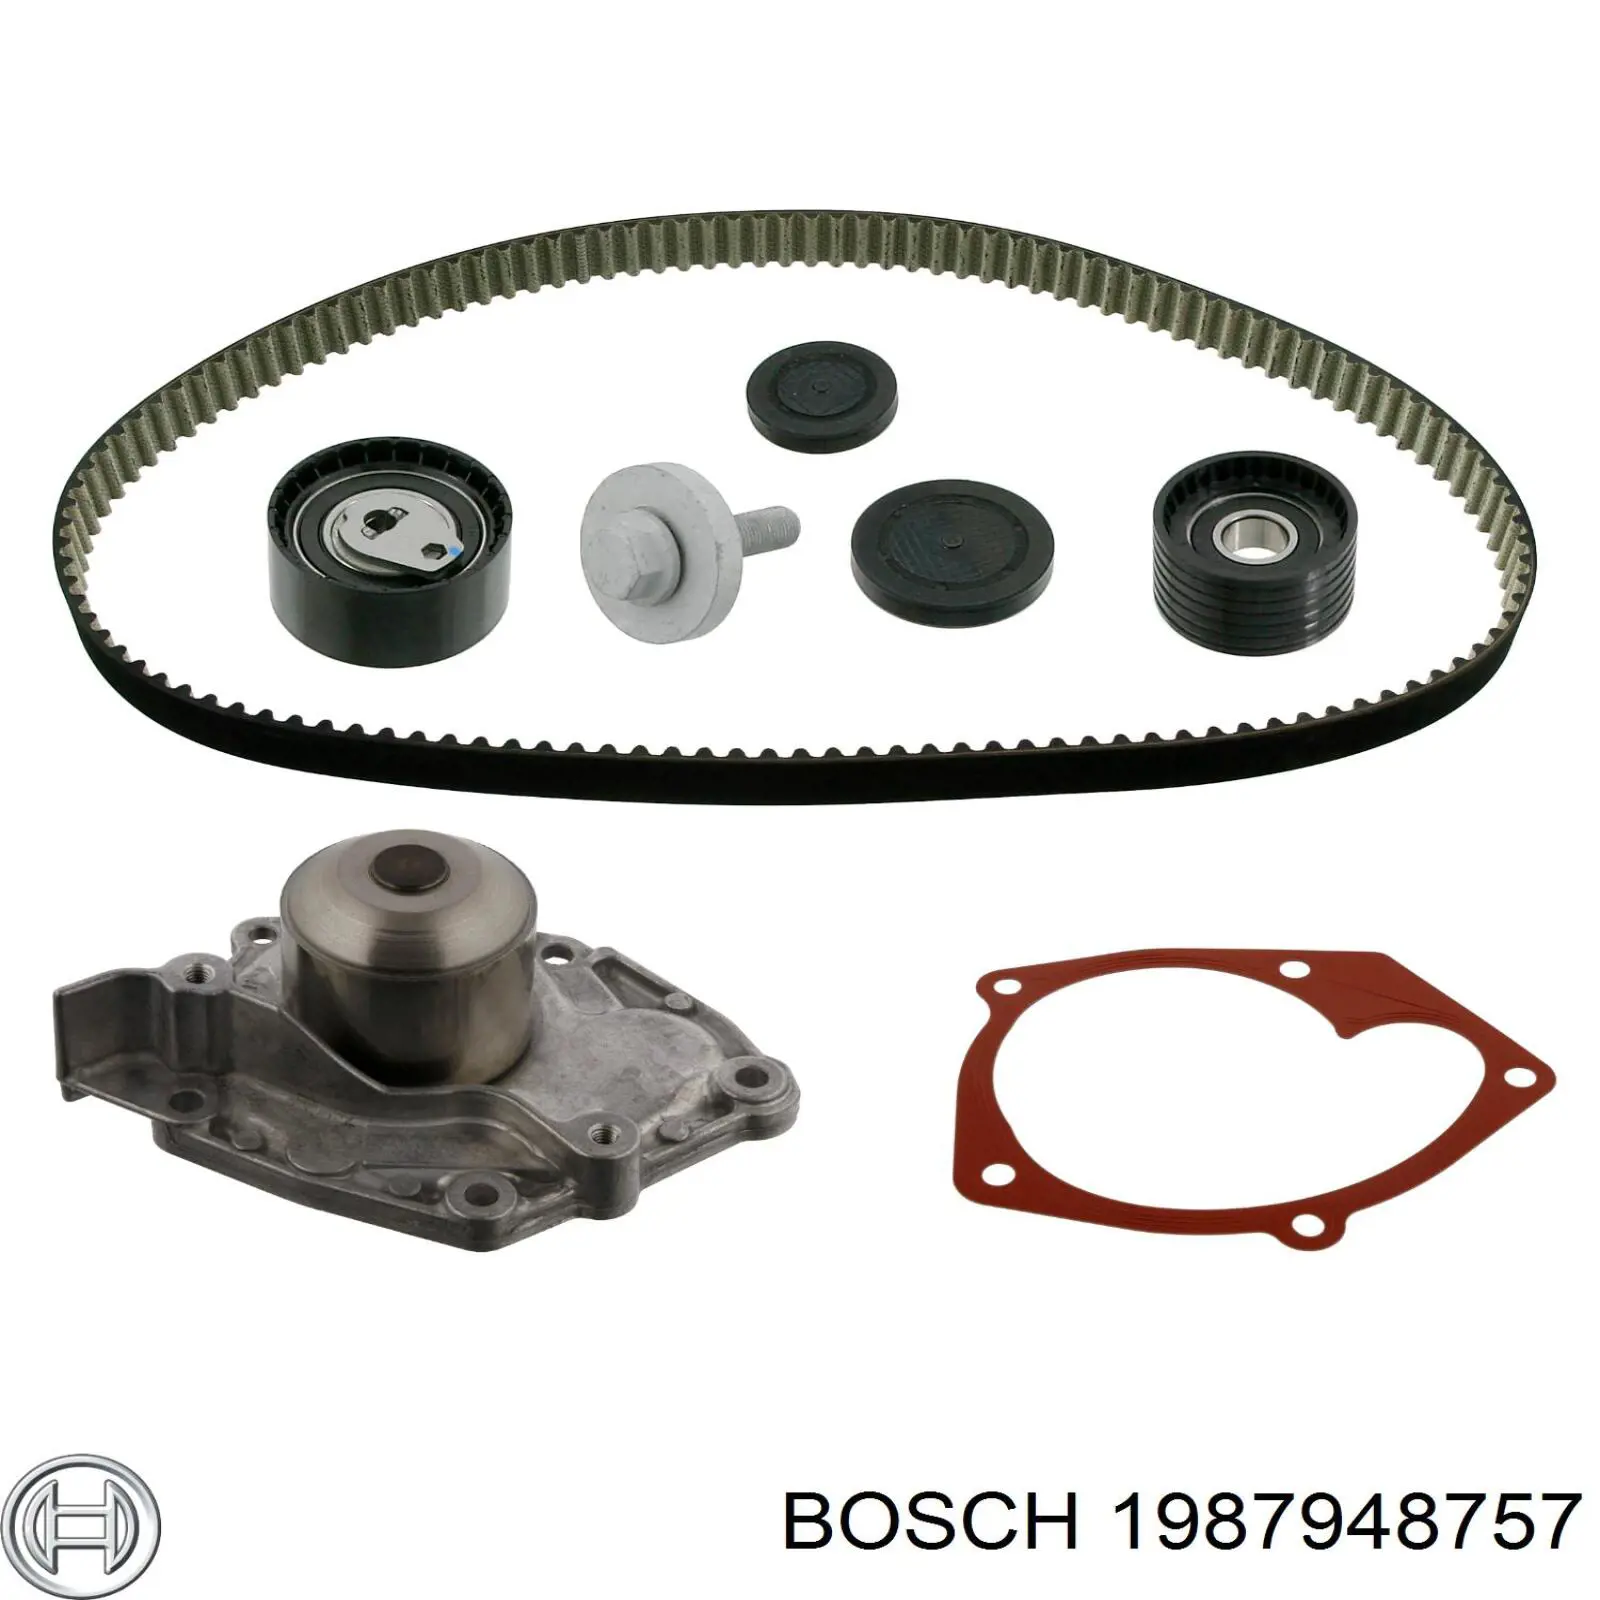 1987948757 Bosch kit de distribución